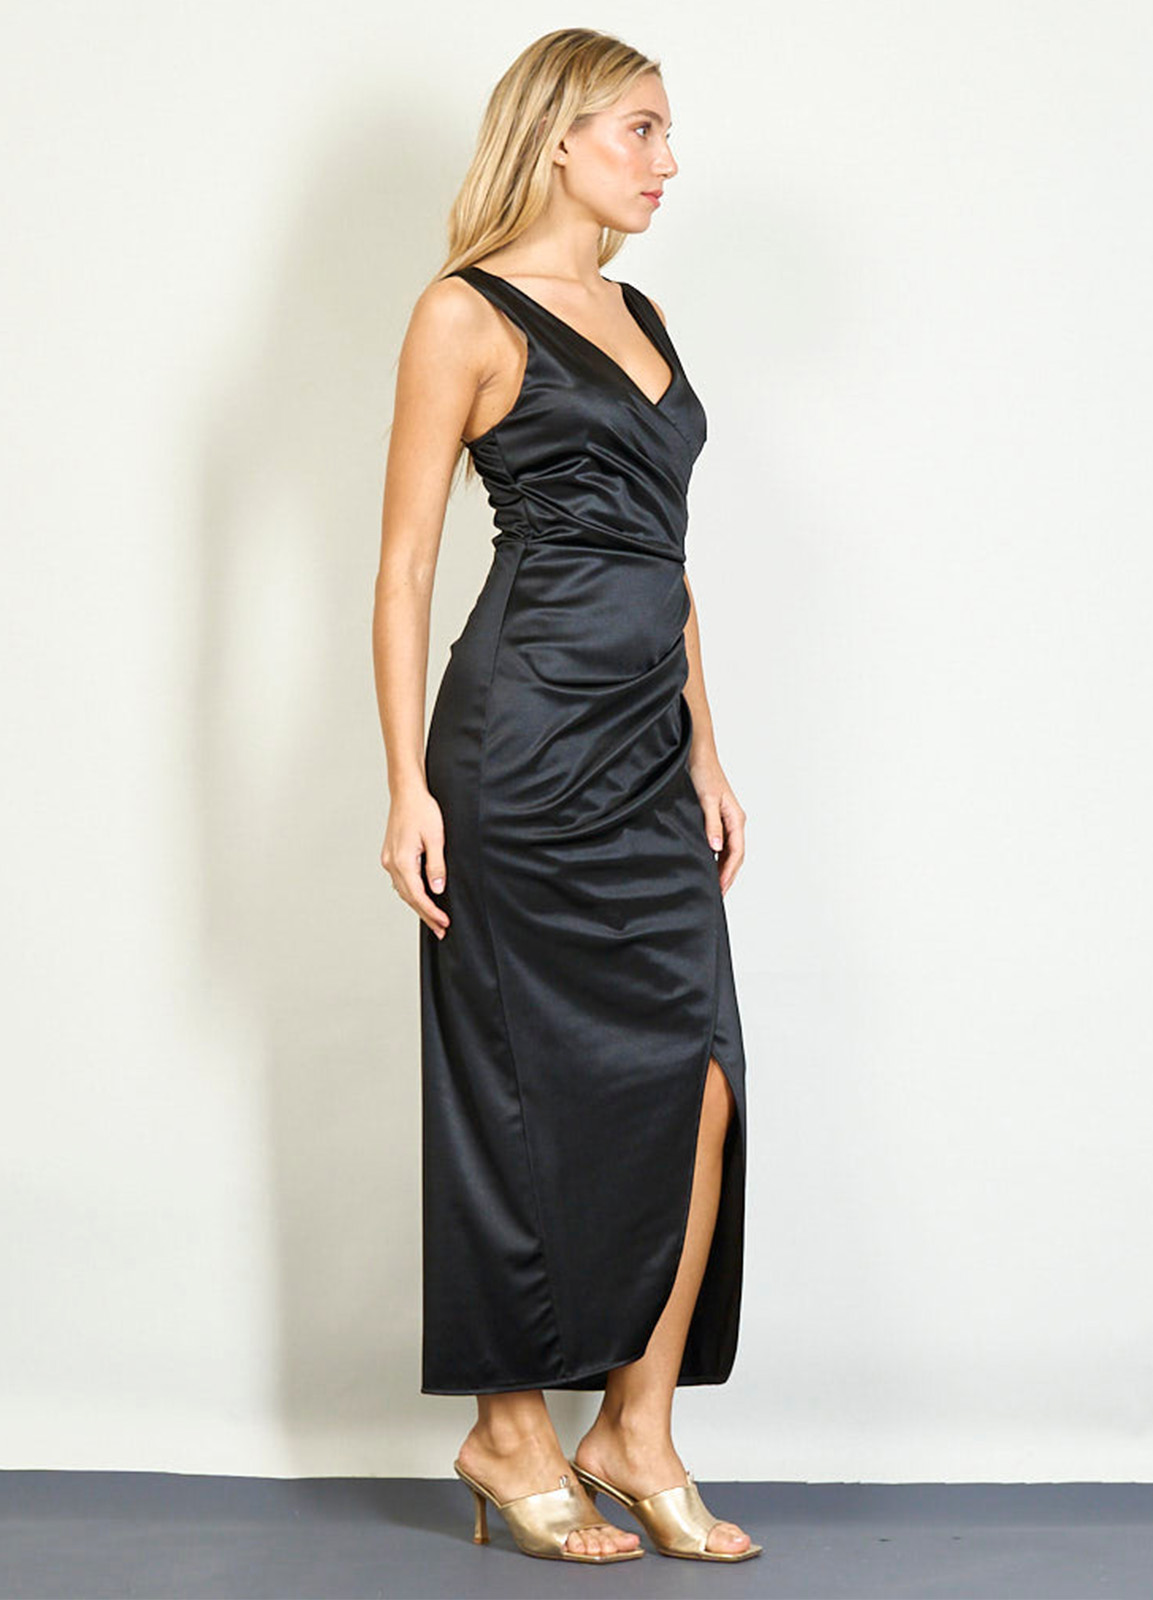 Φόρεμα Μακρύ Σατέν Κρουαζέ Black